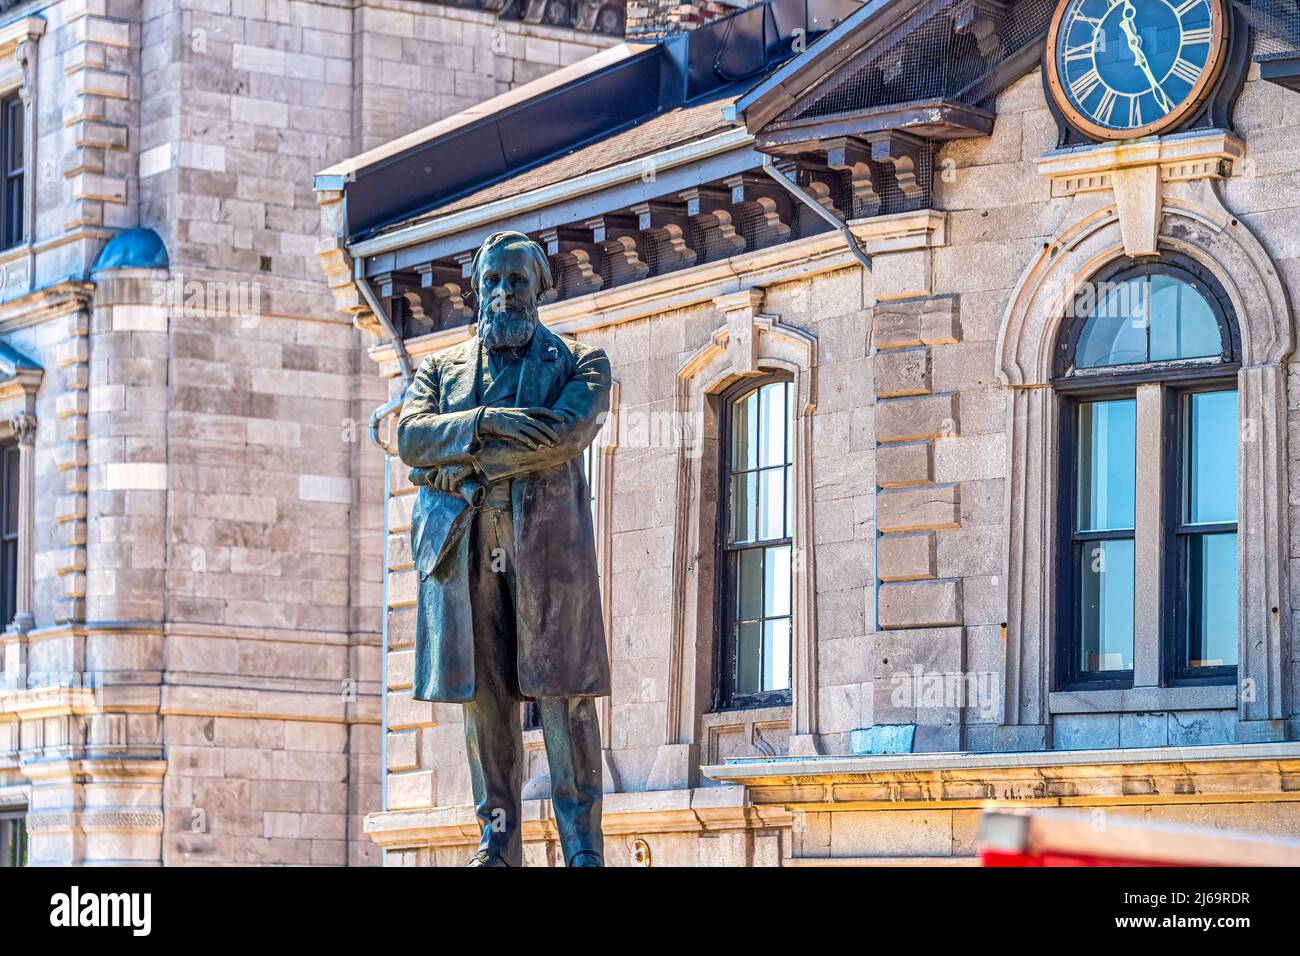 Statua di John Young a Vieux-Montreal o Old Montreal. Il quartiere storico è un sito patrimonio dell'umanità dell'UNESCO e una delle principali attrazioni turistiche della Canad Foto Stock